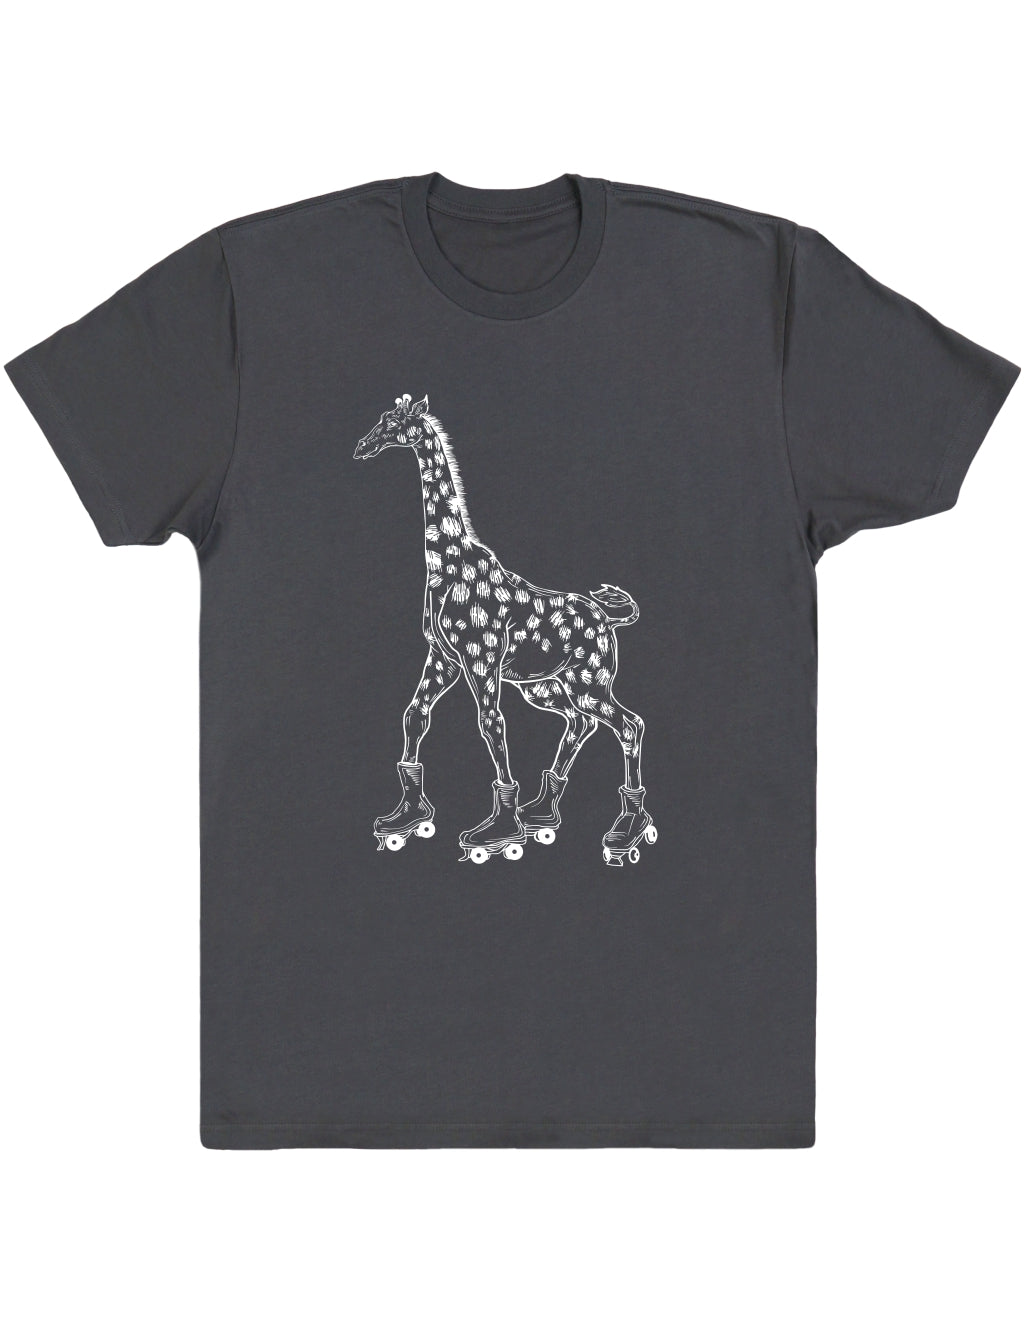 SEEMBO Giraffe Skater Funny Skating Roller Skates Men Cotton T-Shirt